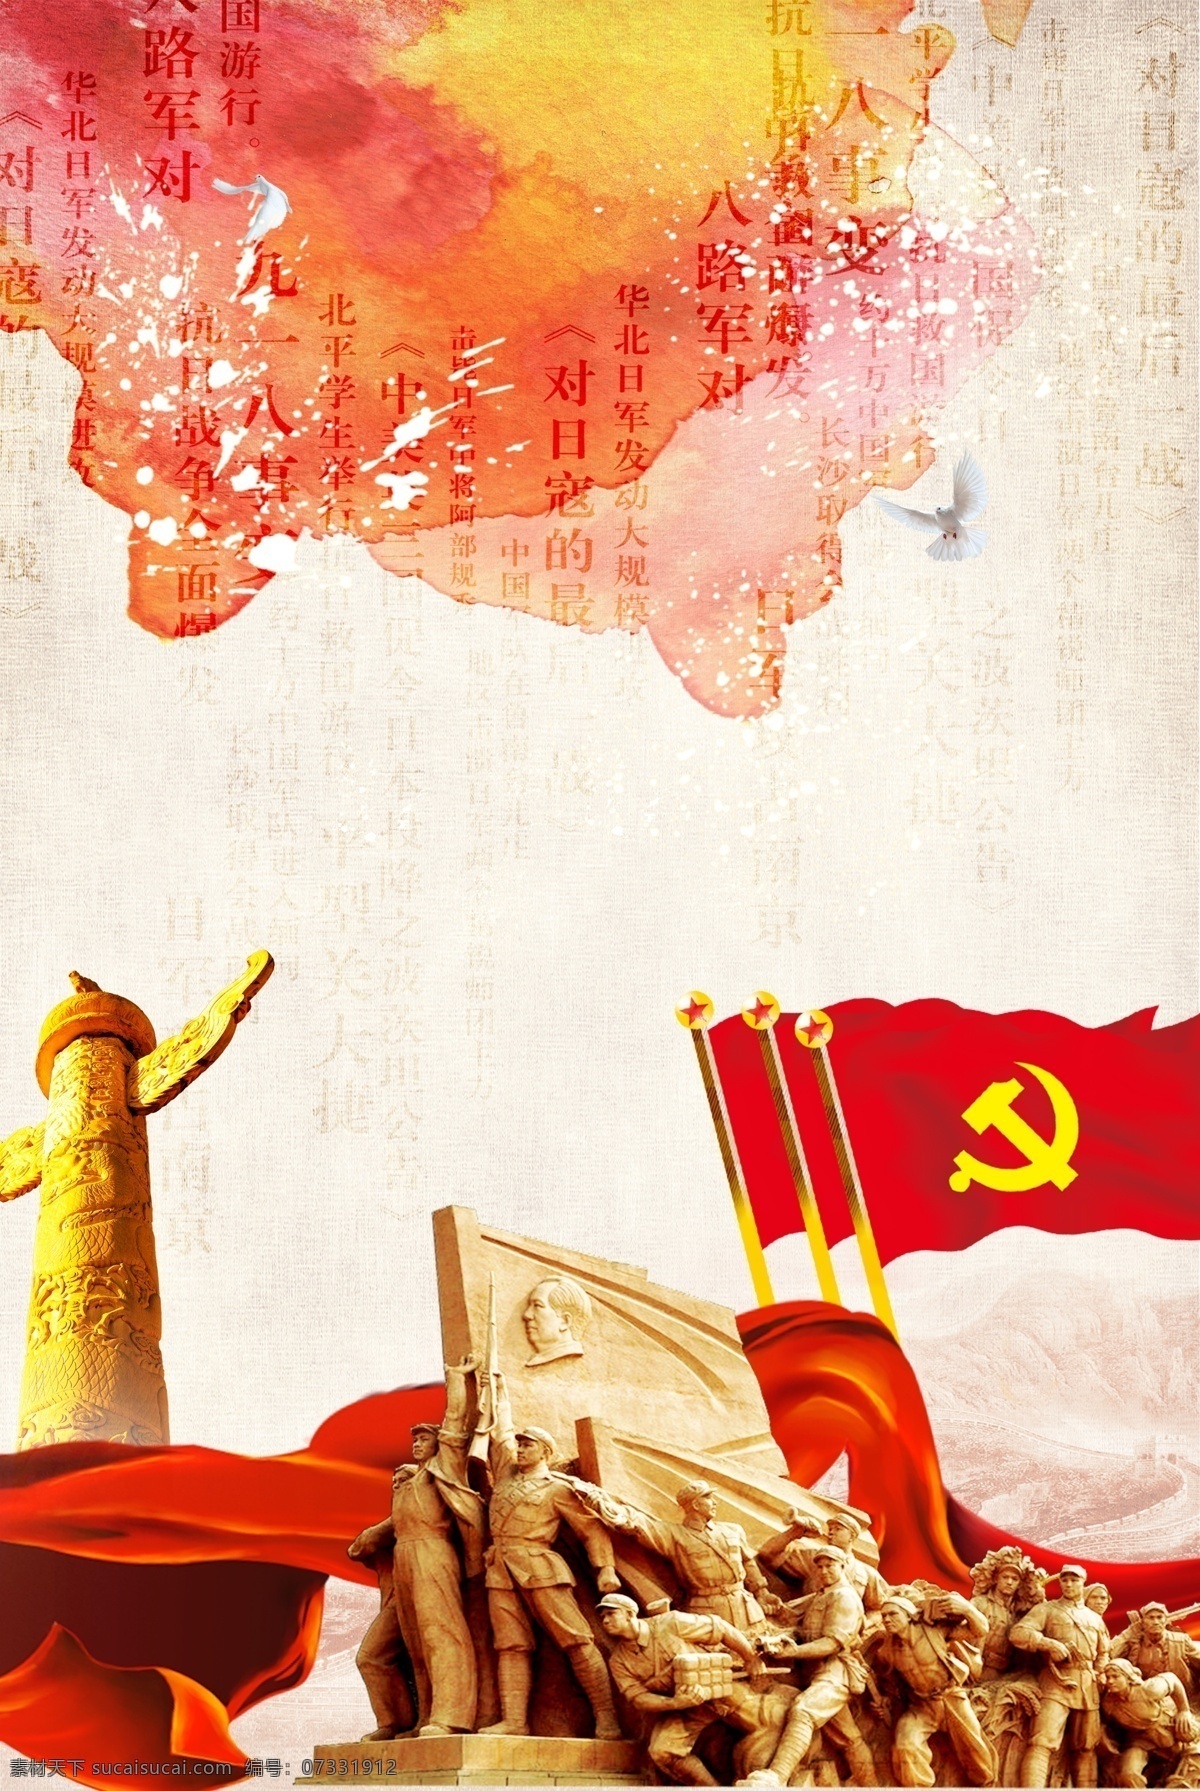 抗日战争 胜利 周年 海报 抗日 战争 73周年 中国红 革命 胜利纪念 红旗 华表 革命战士 党旗